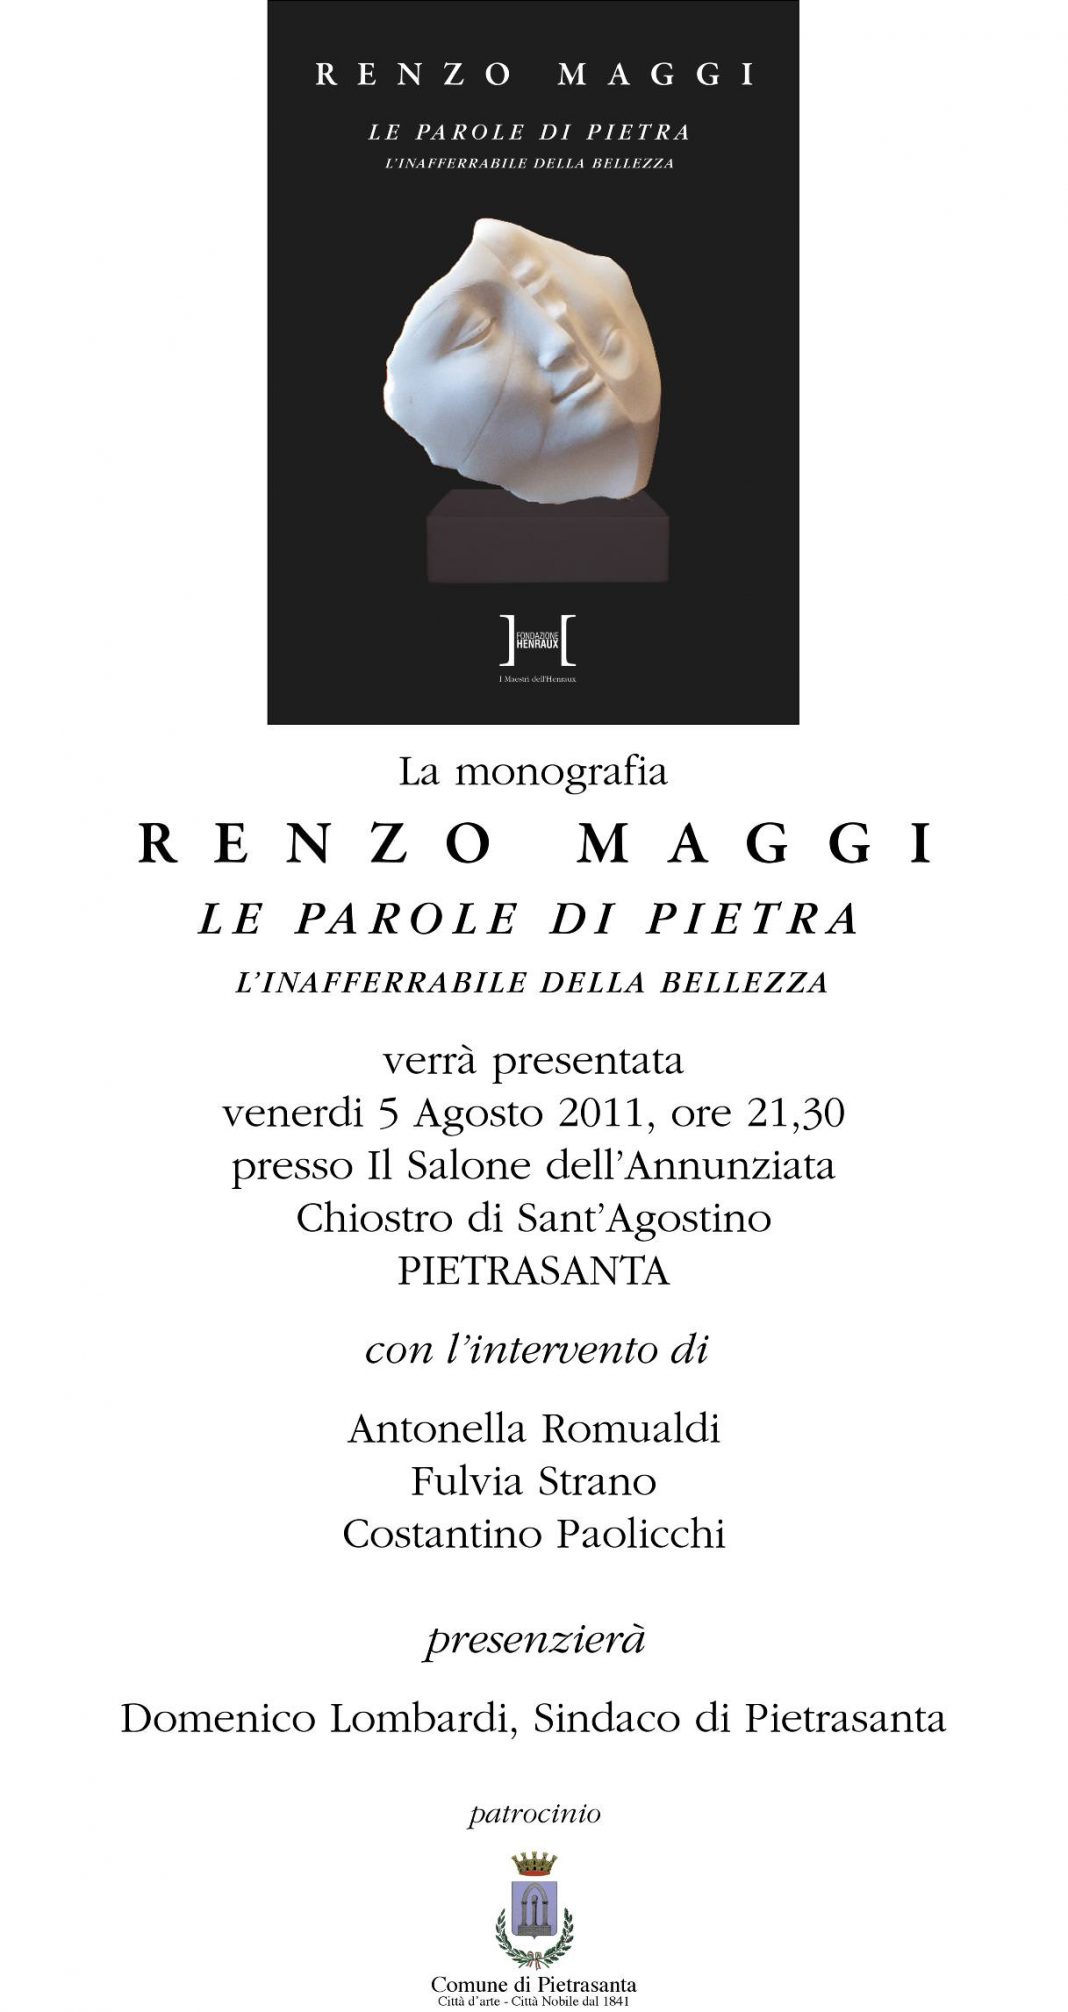 Renzo Maggi – Le Parole di Pietra. I Maestri della Henrauxhttps://www.exibart.com/repository/media/eventi/2011/08/renzo-maggi-8211-le-parole-di-pietra.-i-maestri-della-henraux-1068x2012.jpg